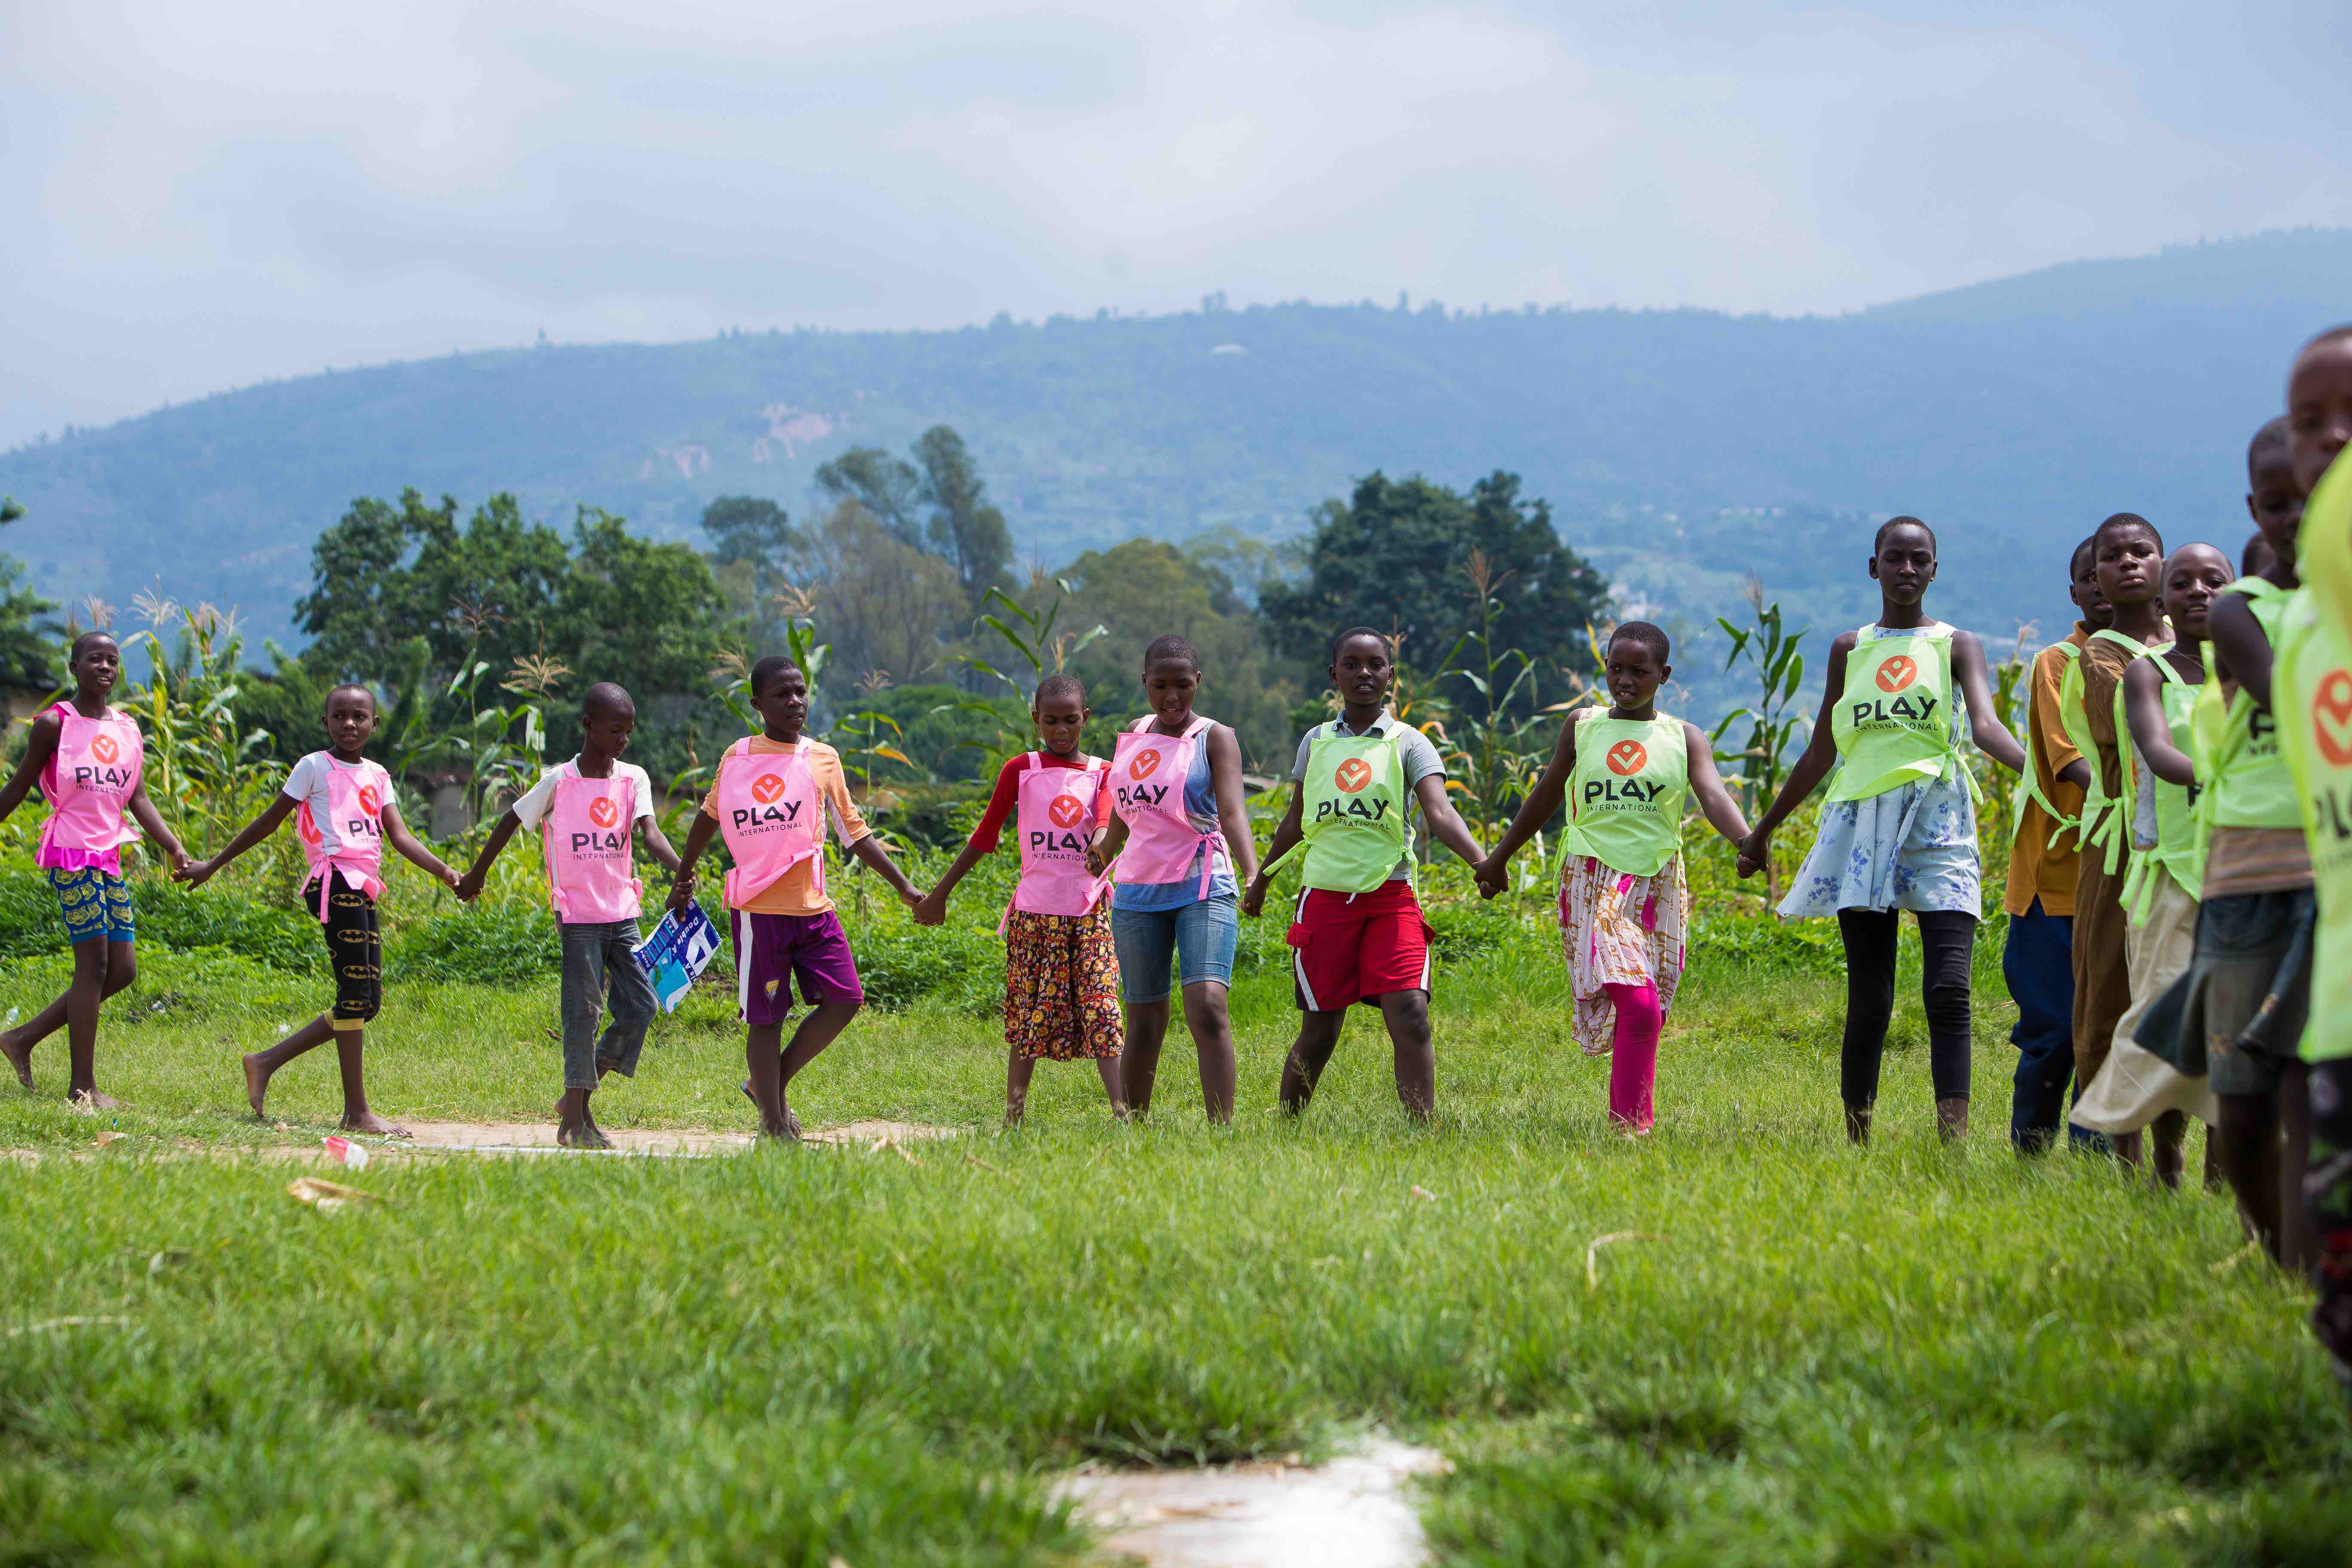 Amep burundi groupe d'enfants